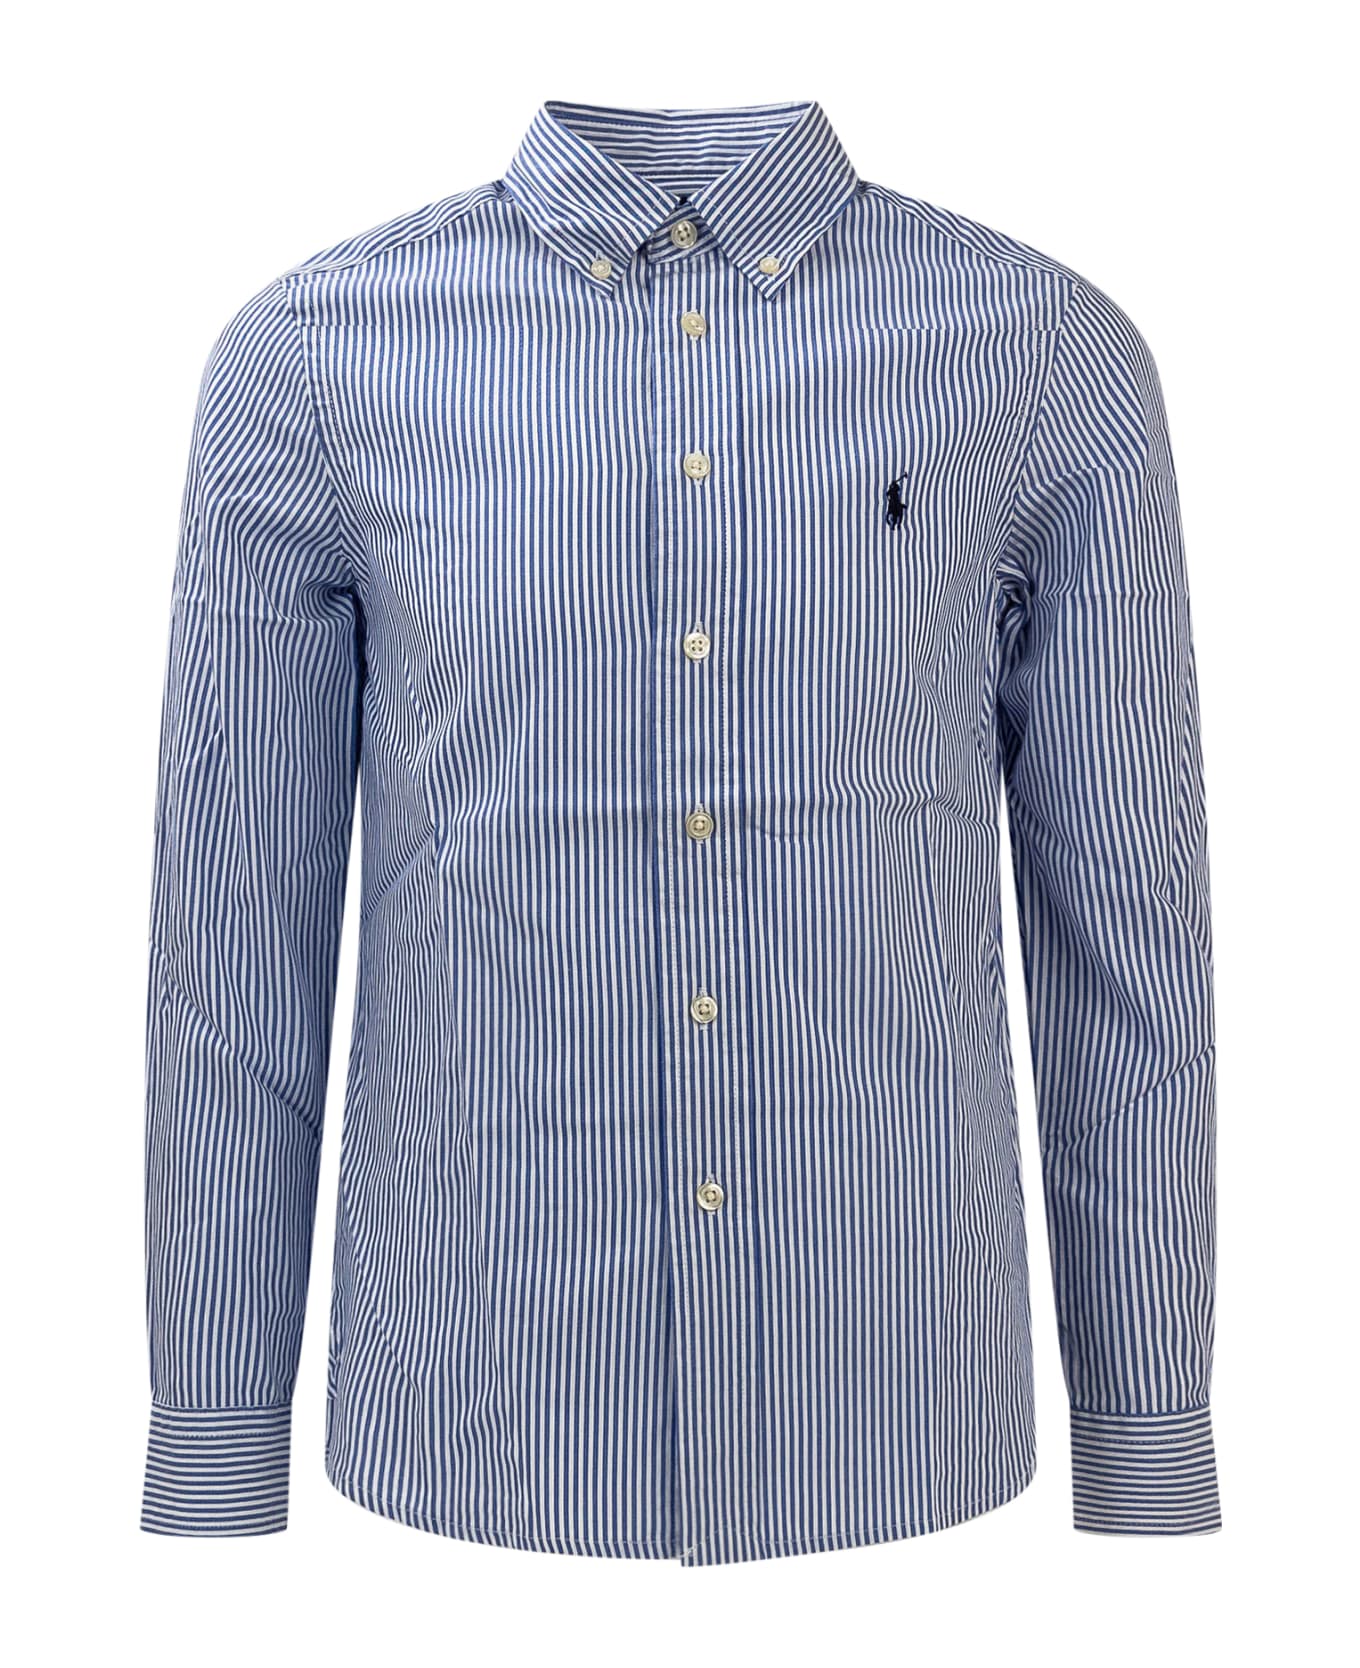 Ralph Lauren Shirt With Logo - Blue